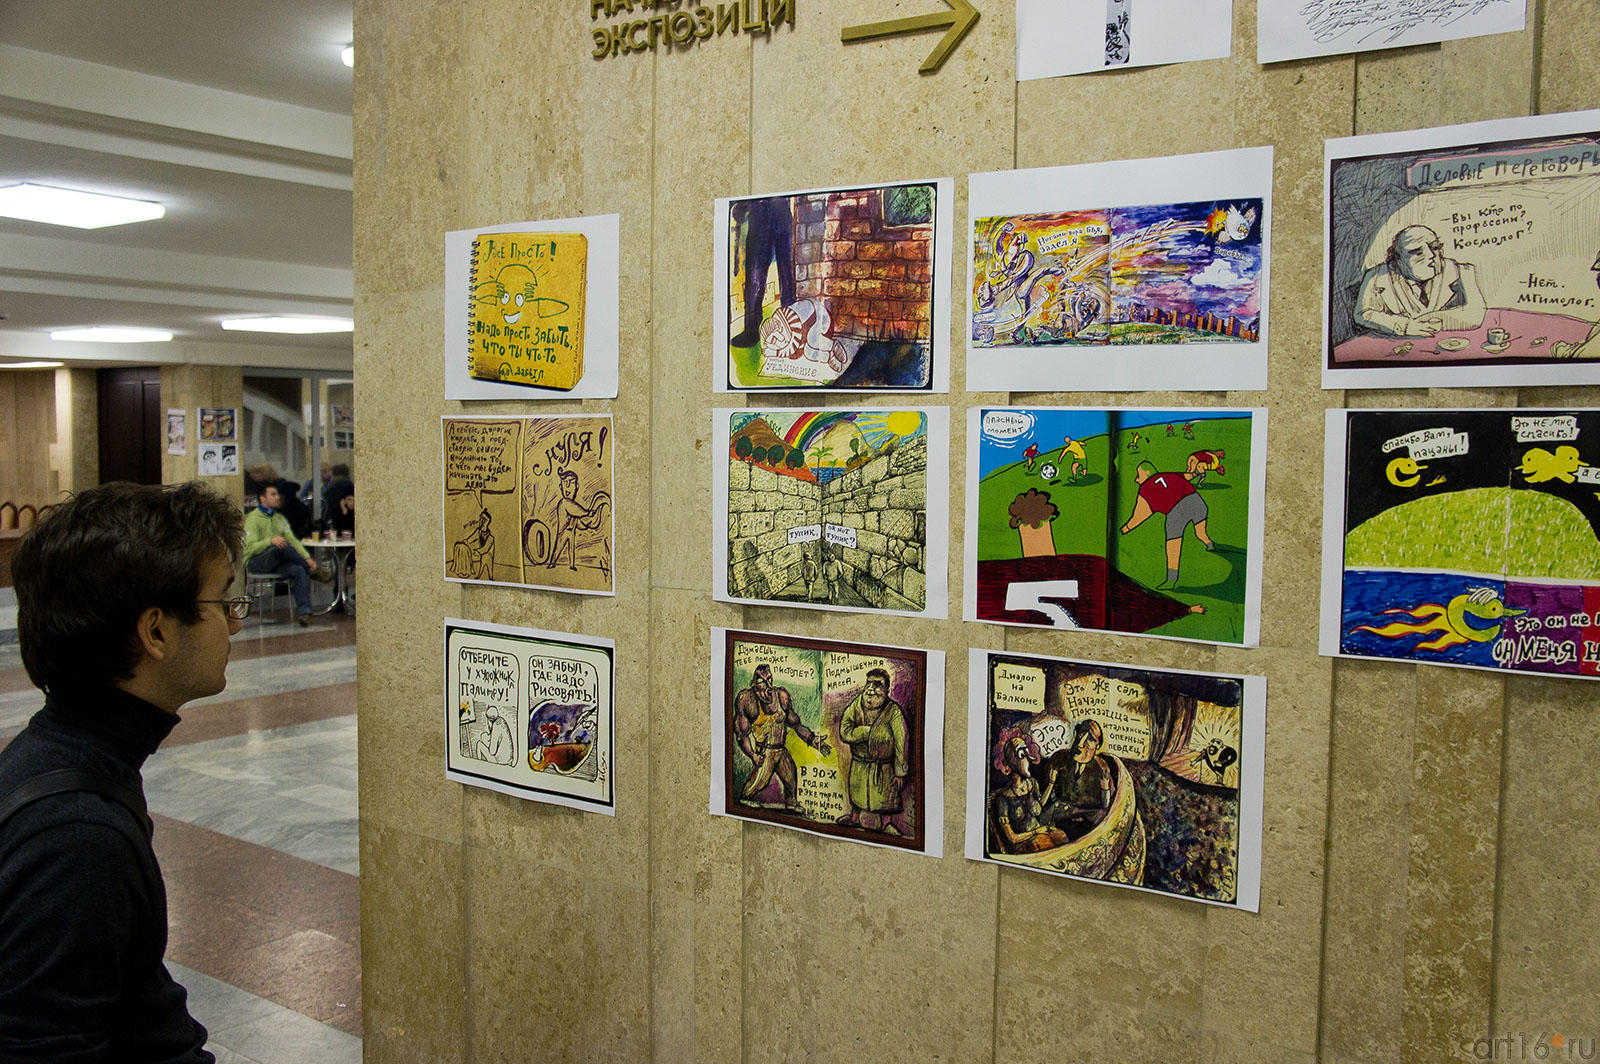 Графика на фестивале «Трипфест - 2011», Казань::ТРИПФЕСТ